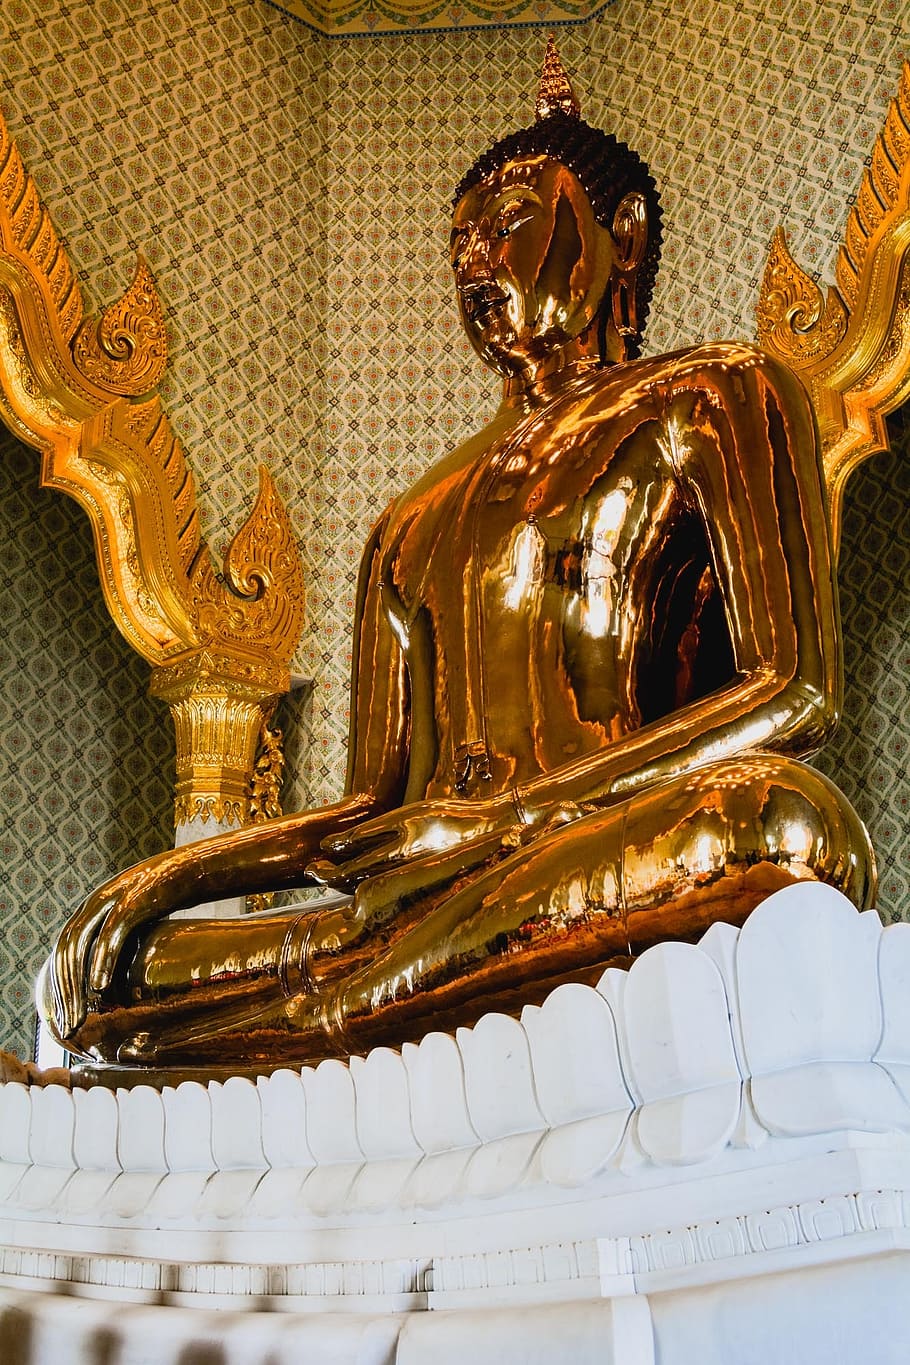 estátua de buda, h, budismo, fé, que respeito, uma peregrinação, coisa sagrada, adoração, mérito, templo da tailândia